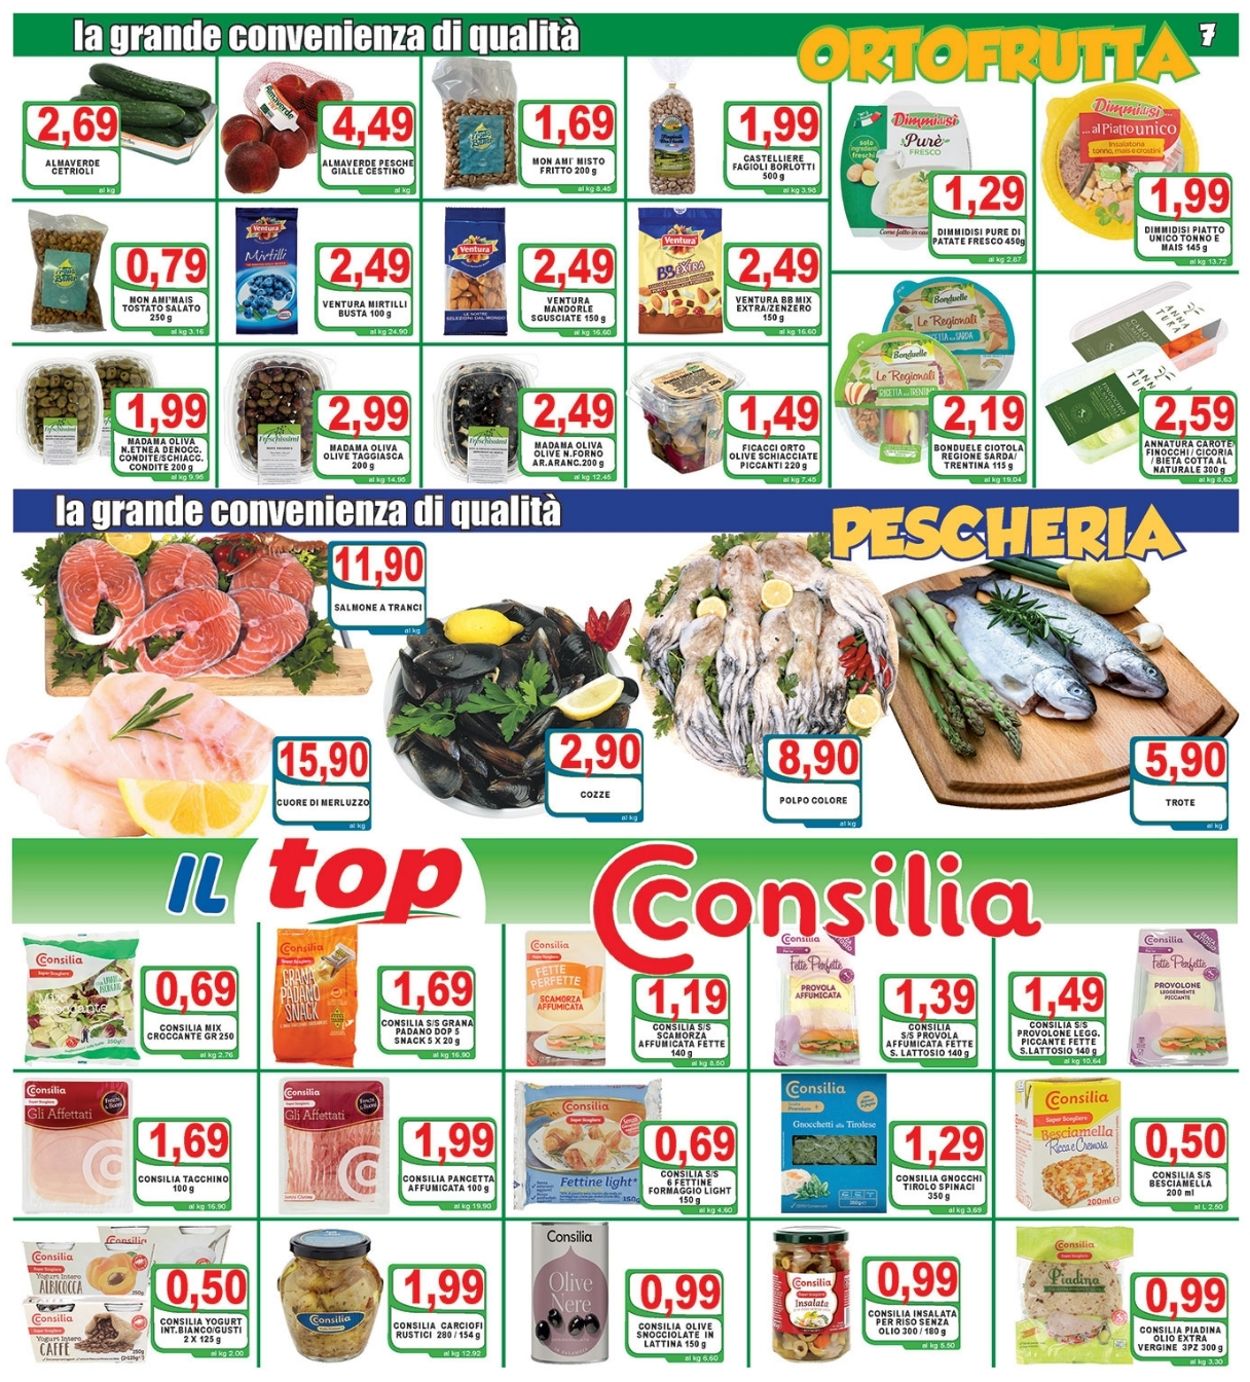 Top Supermercati Volantino dal 09/07/2021